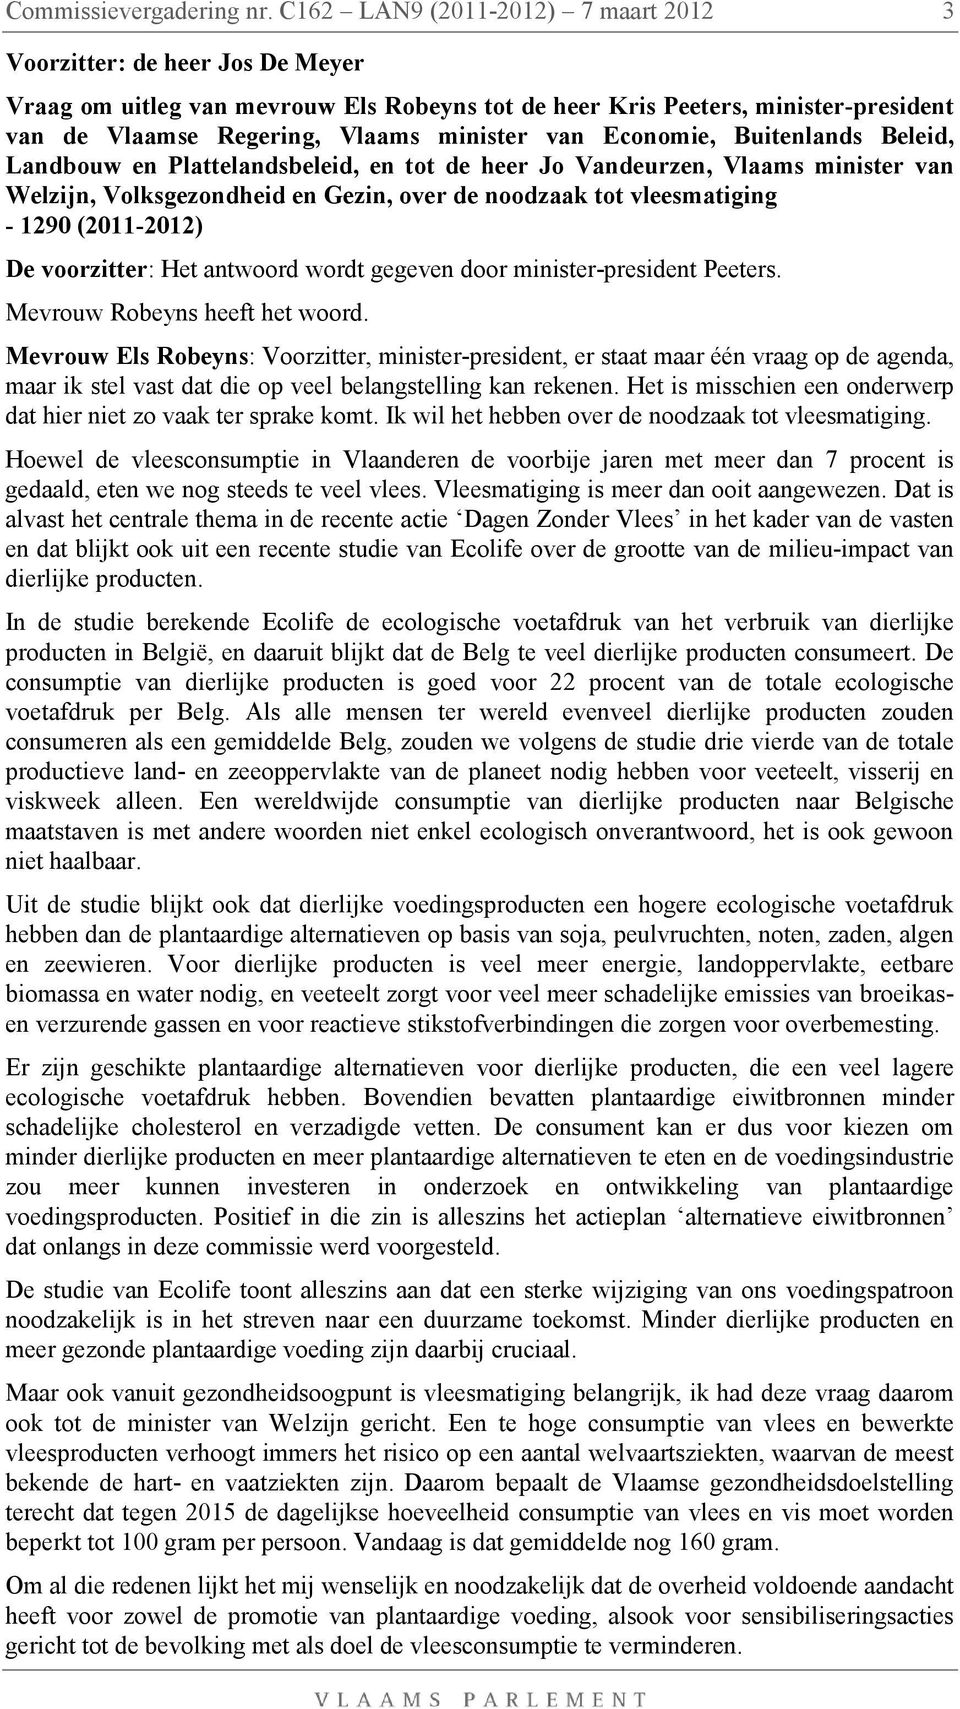 Economie, Buitenlands Beleid, Landbouw en Plattelandsbeleid, en tot de heer Jo Vandeurzen, Vlaams minister van Welzijn, Volksgezondheid en Gezin, over de noodzaak tot vleesmatiging - 1290 (2011-2012)